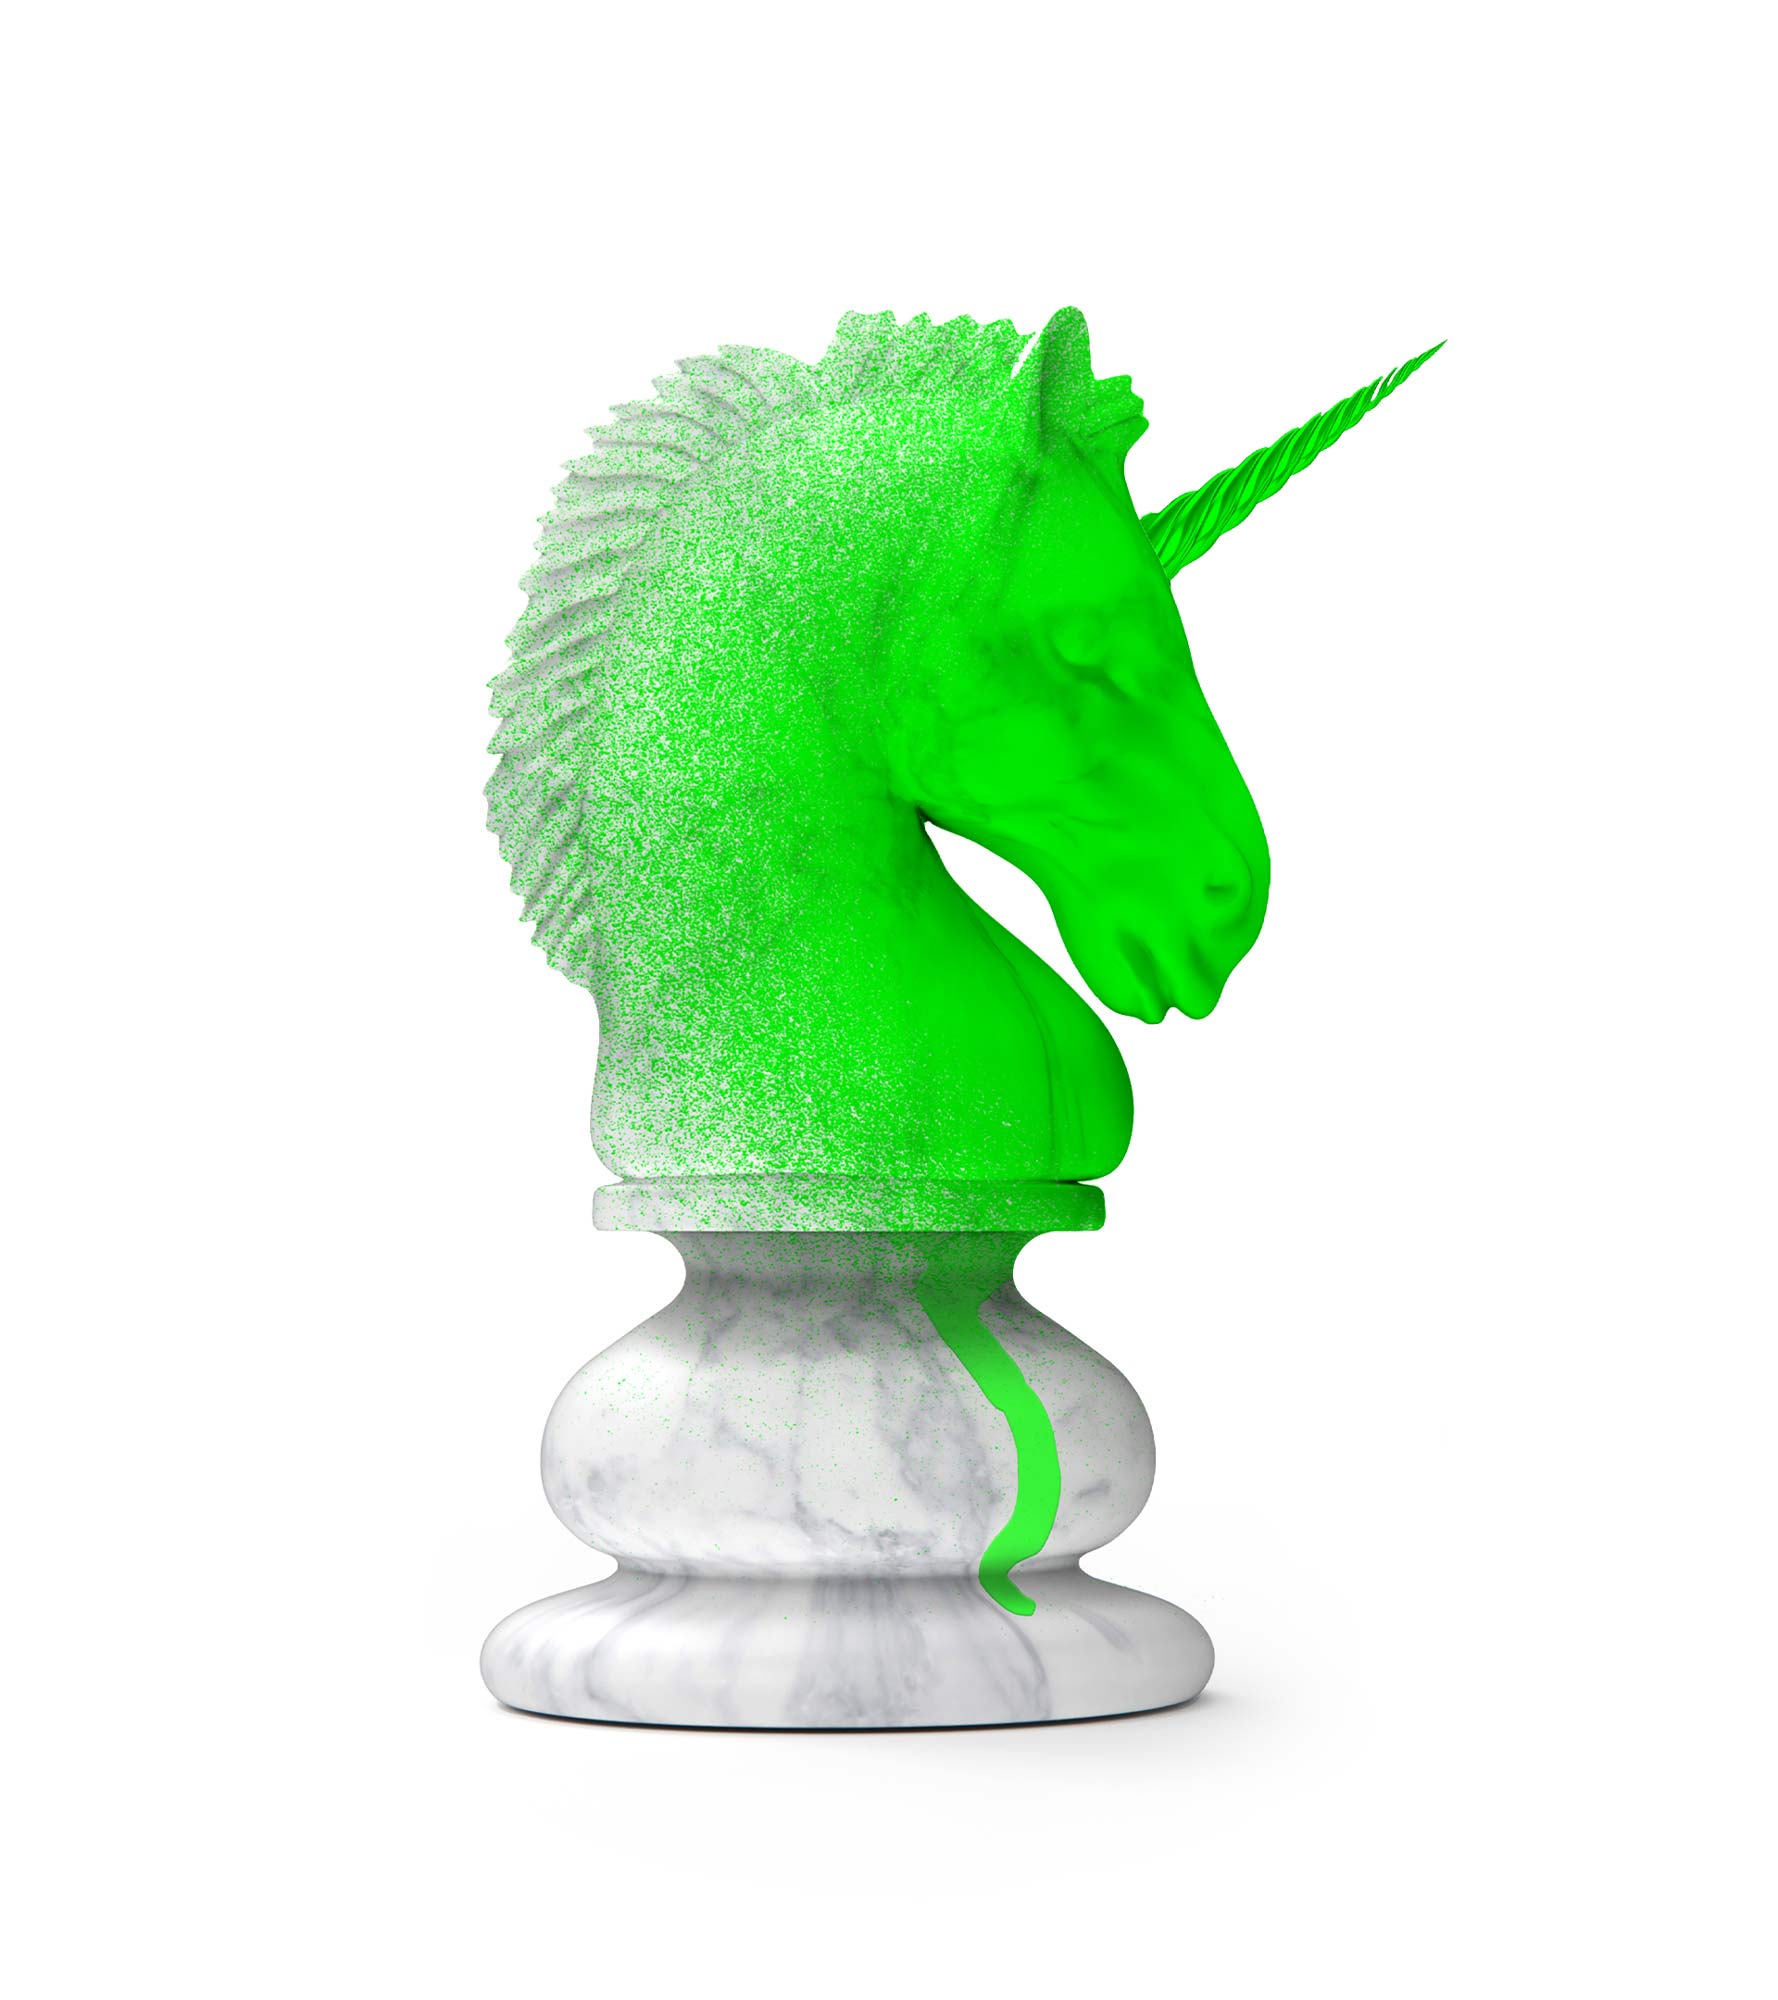 Die Schachfigur des Pferdes, angemalt mit grüner Sprühfarbe.